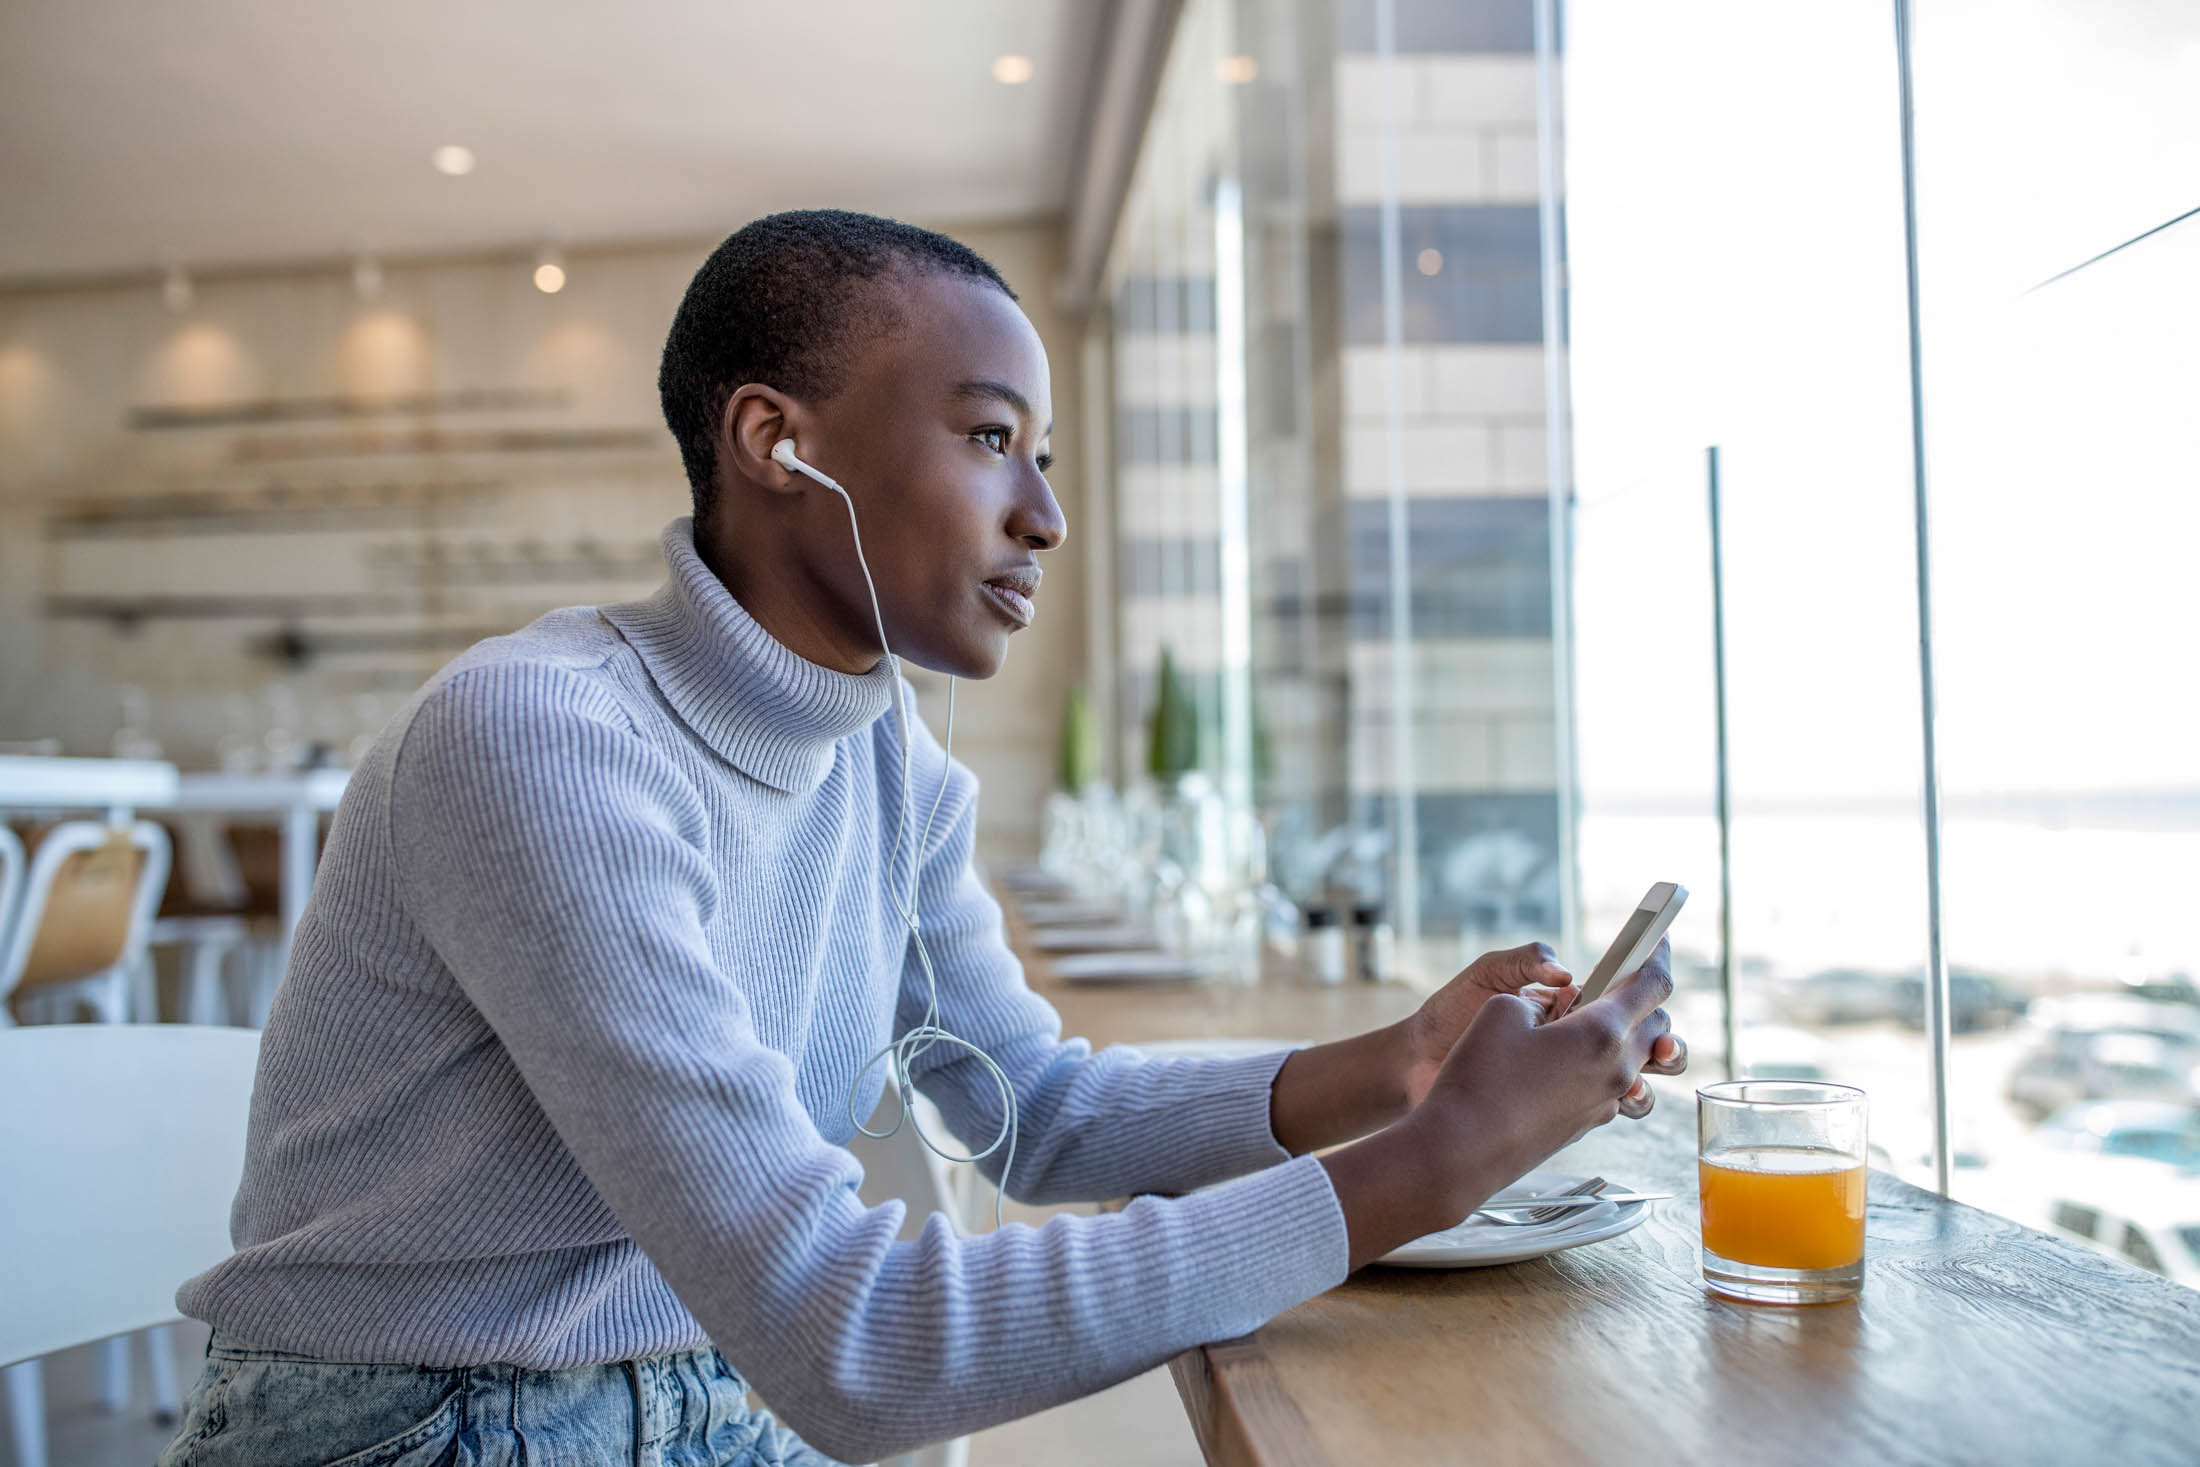 Eine junge Frau mit weißem Rollkragenpullover und Kopfhörern sitzt an einem Cafétisch am Fenster, blickt nachdenklich auf ihr Smartphone und hat neben sich ein Glas Orangensaft stehen. © Fotografie Tomas Rodriguez